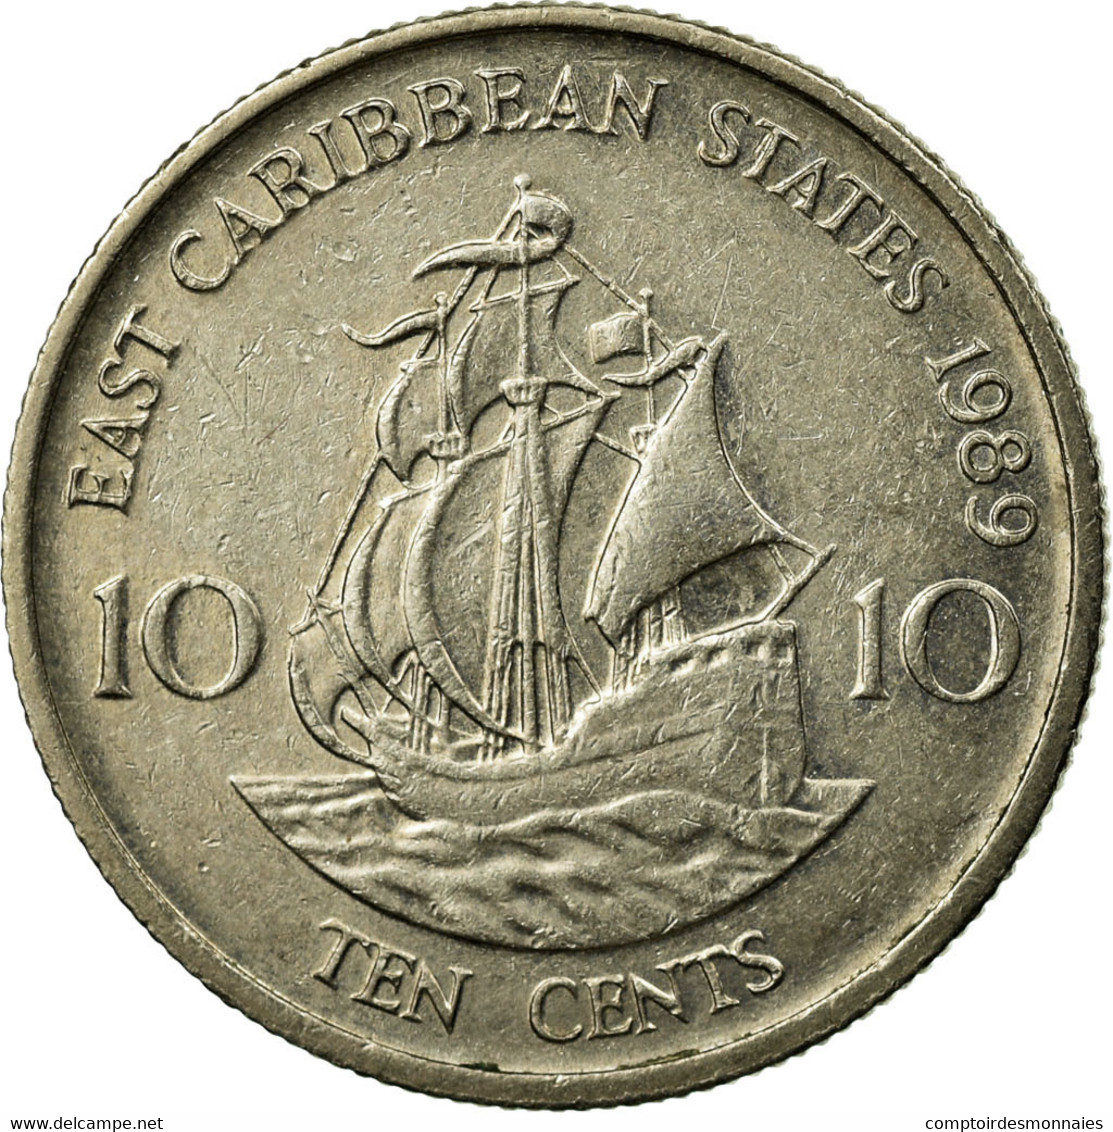 Monnaie, Etats Des Caraibes Orientales, Elizabeth II, 10 Cents, 1989, TTB - East Caribbean States